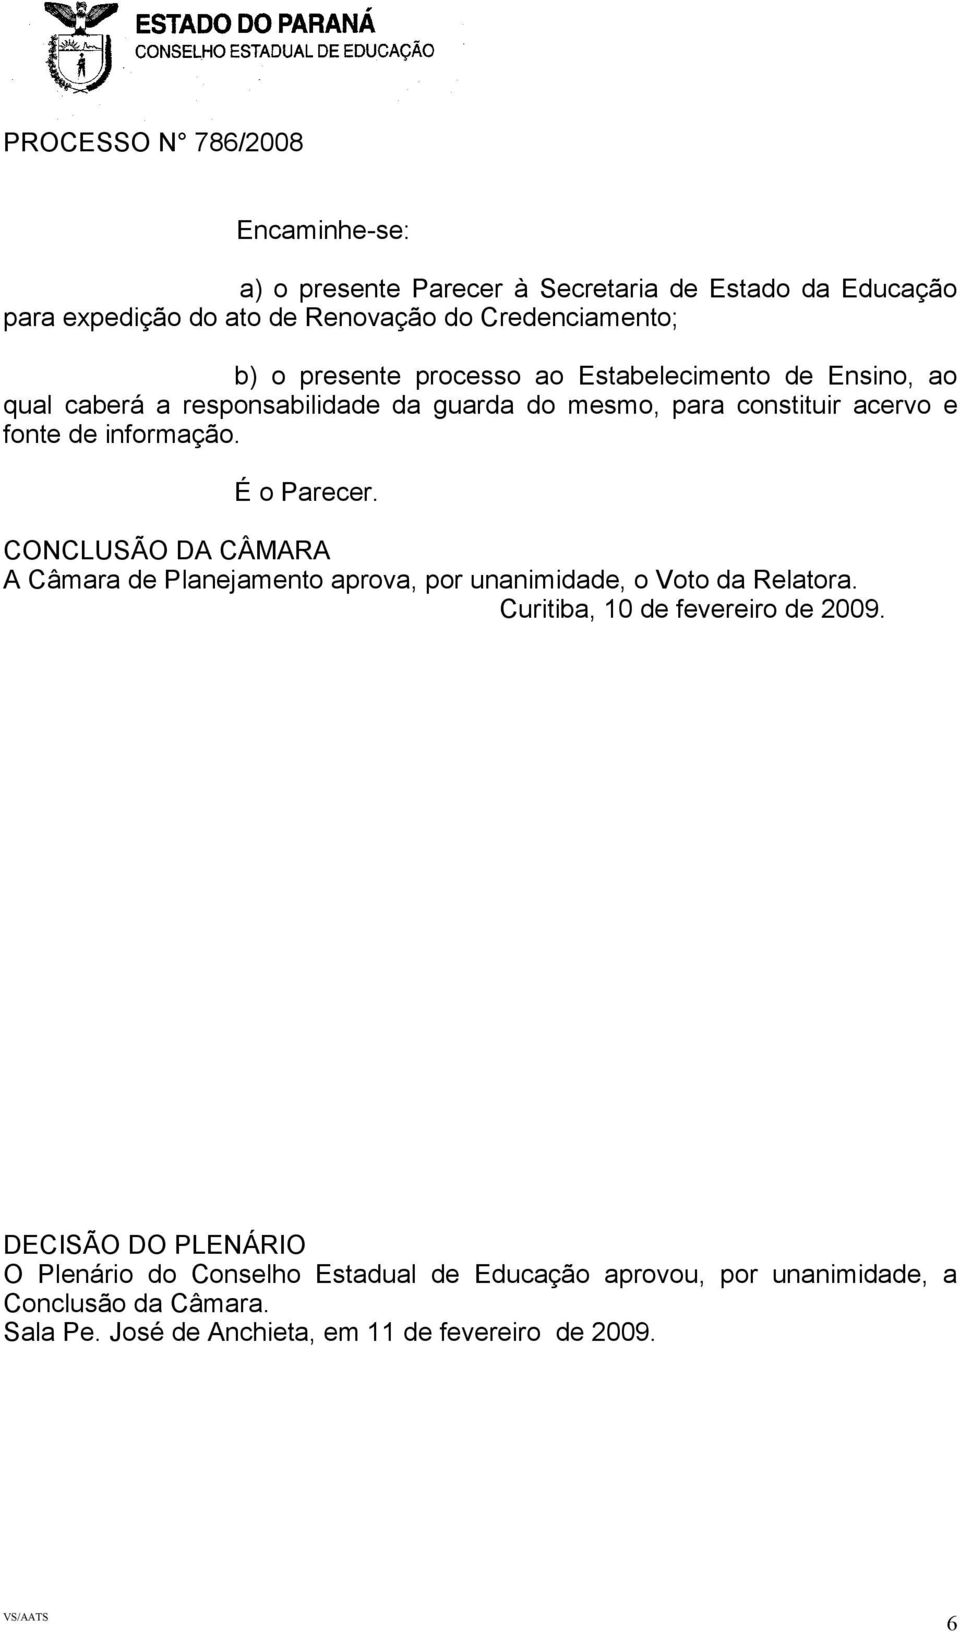 É o Parecer. CONCLUSÃO DA CÂMARA A Câmara de Planejamento aprova, por unanimidade, o Voto da Relatora. Curitiba, 10 de fevereiro de 2009.